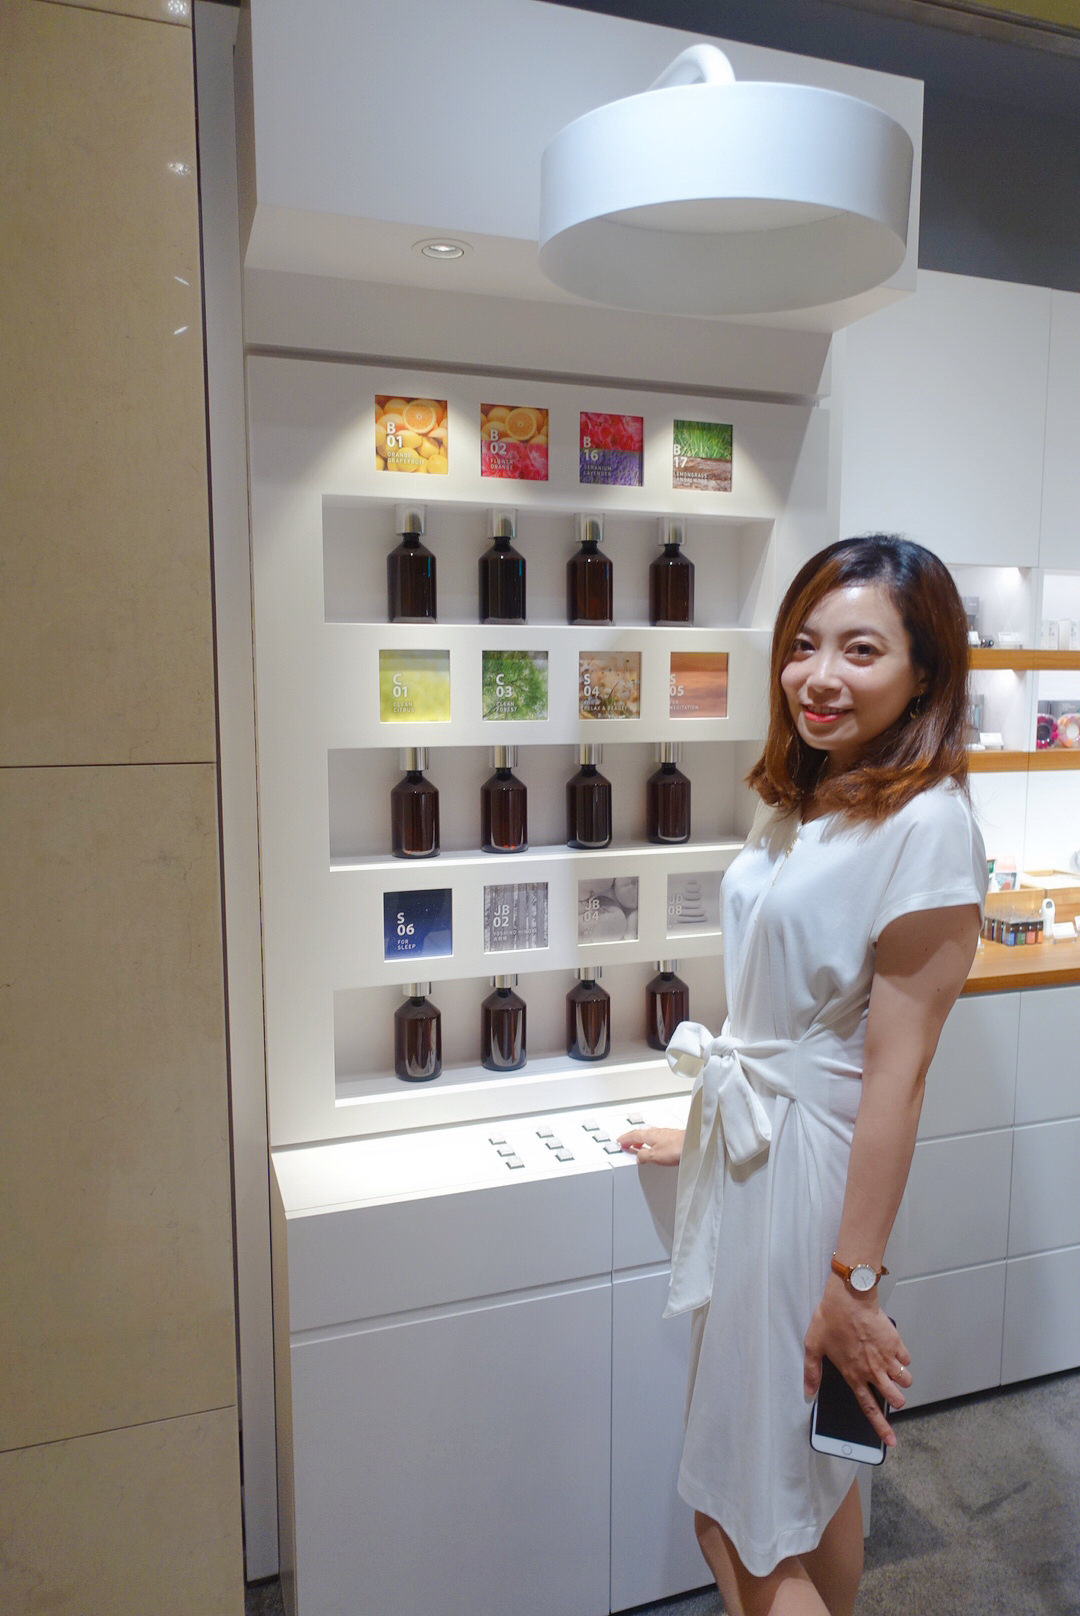 【精油香氛】來自日本的@aroma日系質感香氛精油+我的精油戰利品 (Nordic北歐櫥窗)